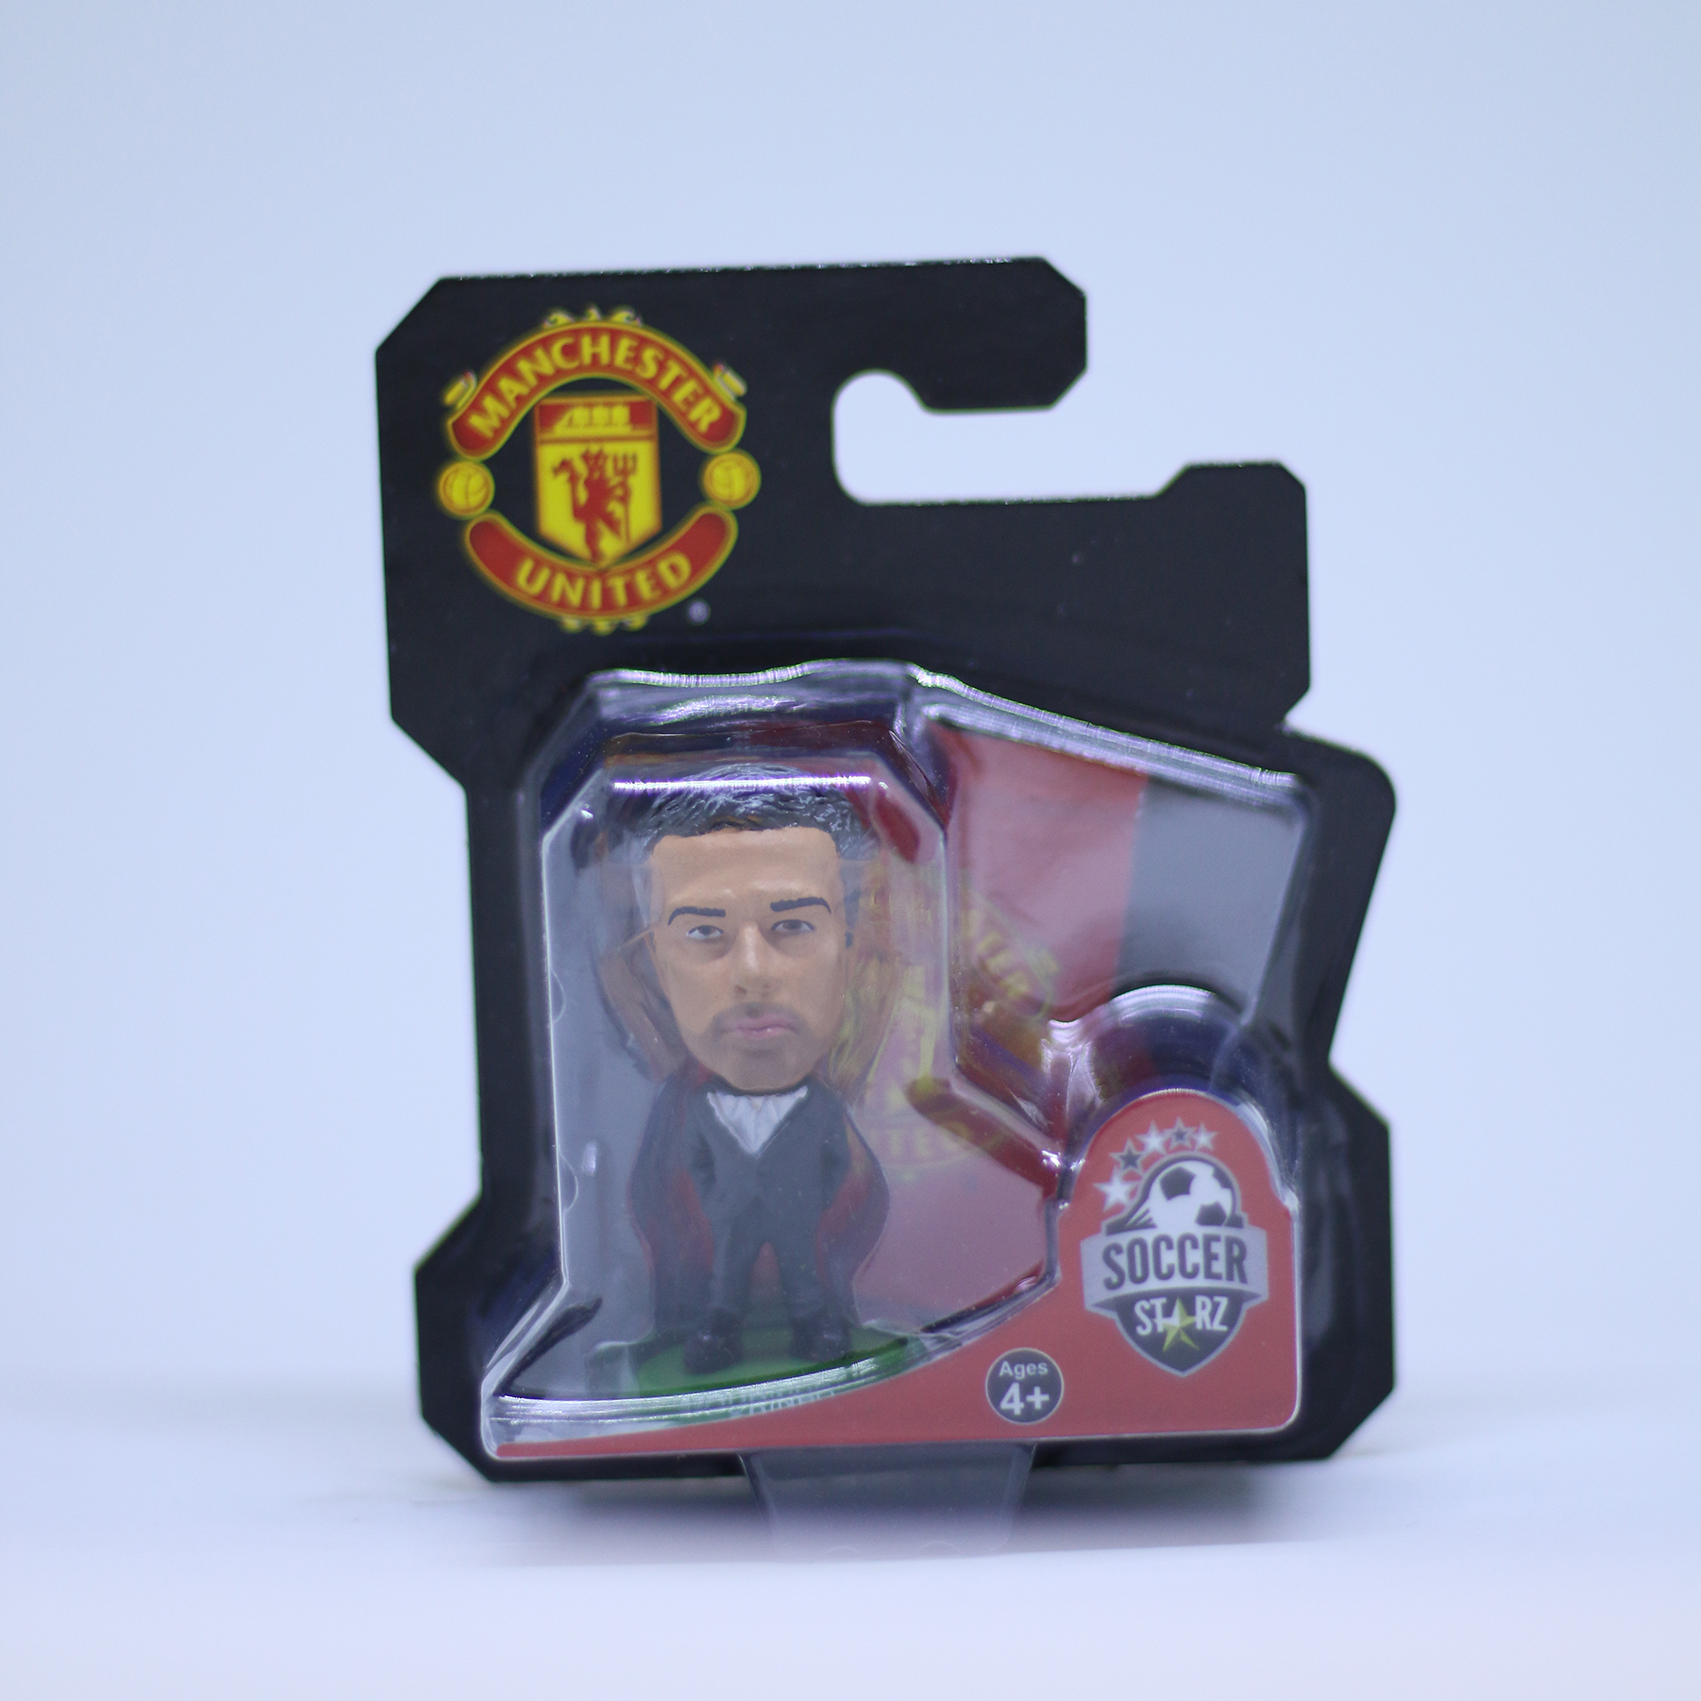 โมเดล นักฟุตบอล Jose Mourinho - Suit ลิขสิทธิ์แท้ MANUTD